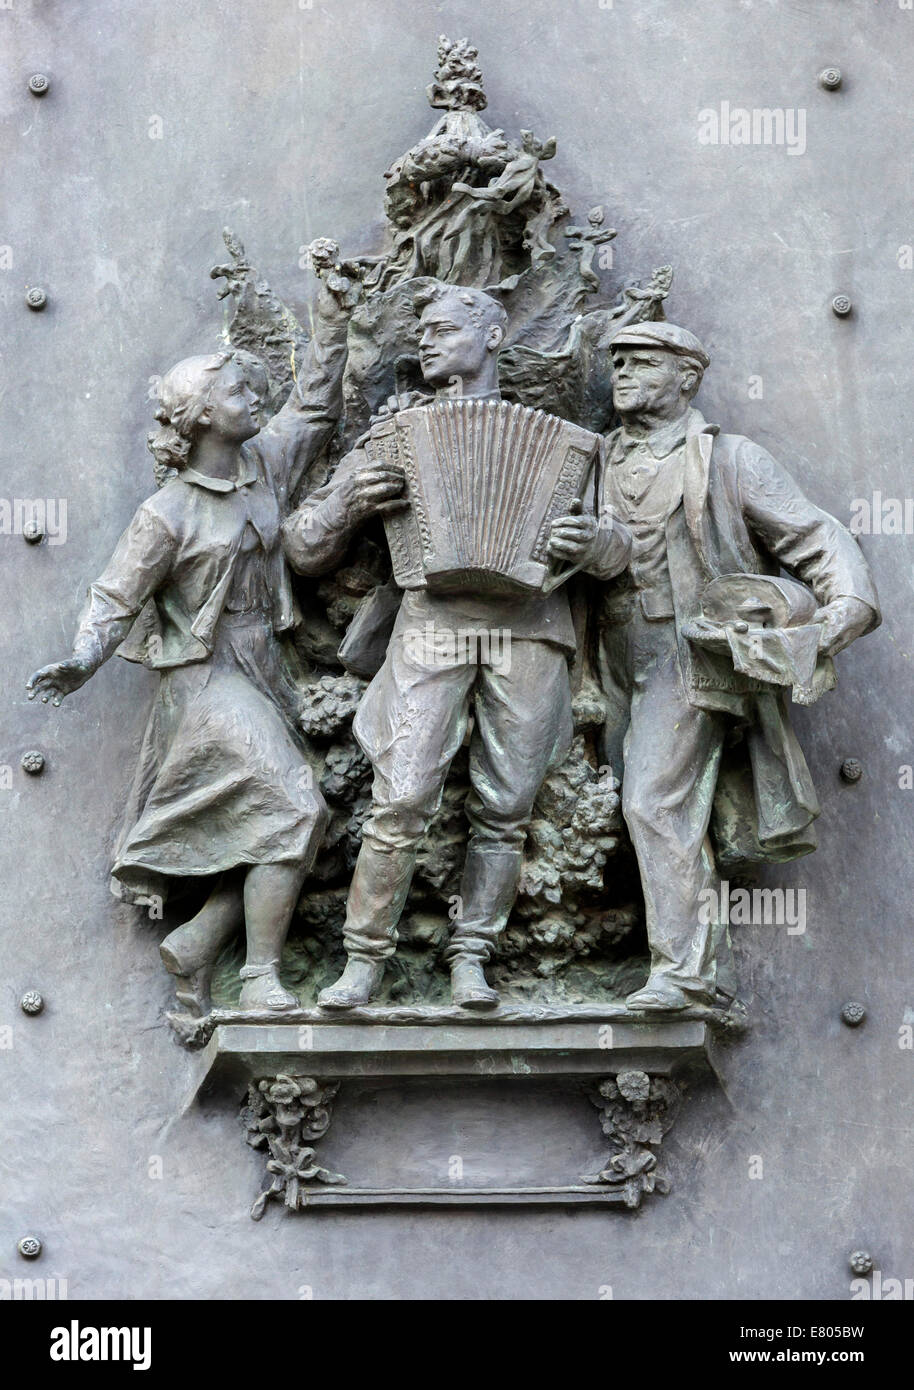 Porte en bronze de la salle de l'Armée rouge dans le monument national de Vitkov Zizkov, Prague, République Tchèque 1945 monument soviétique Banque D'Images